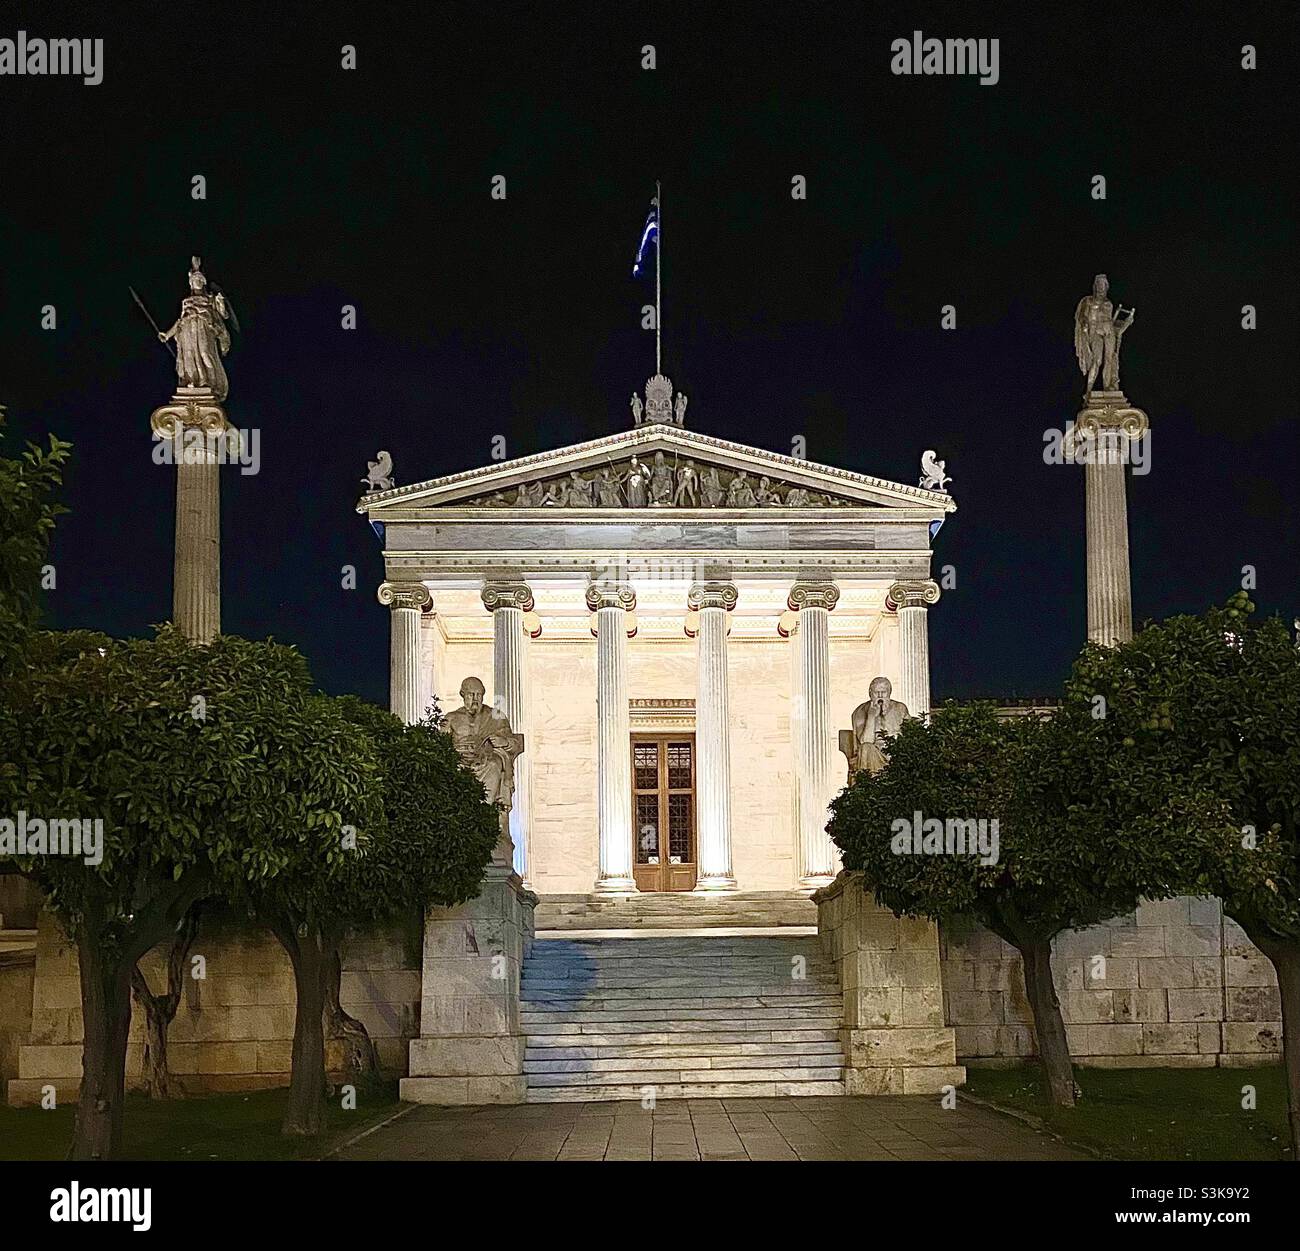 L'Académie d'Athènes, Grèce, tard dans la nuit, est la plus ancienne et la plus haute institution de recherche de Grèce.Le bâtiment fait partie d'une trilogie architecturale aux côtés de la Bibliothèque nationale et de l'Université. Banque D'Images